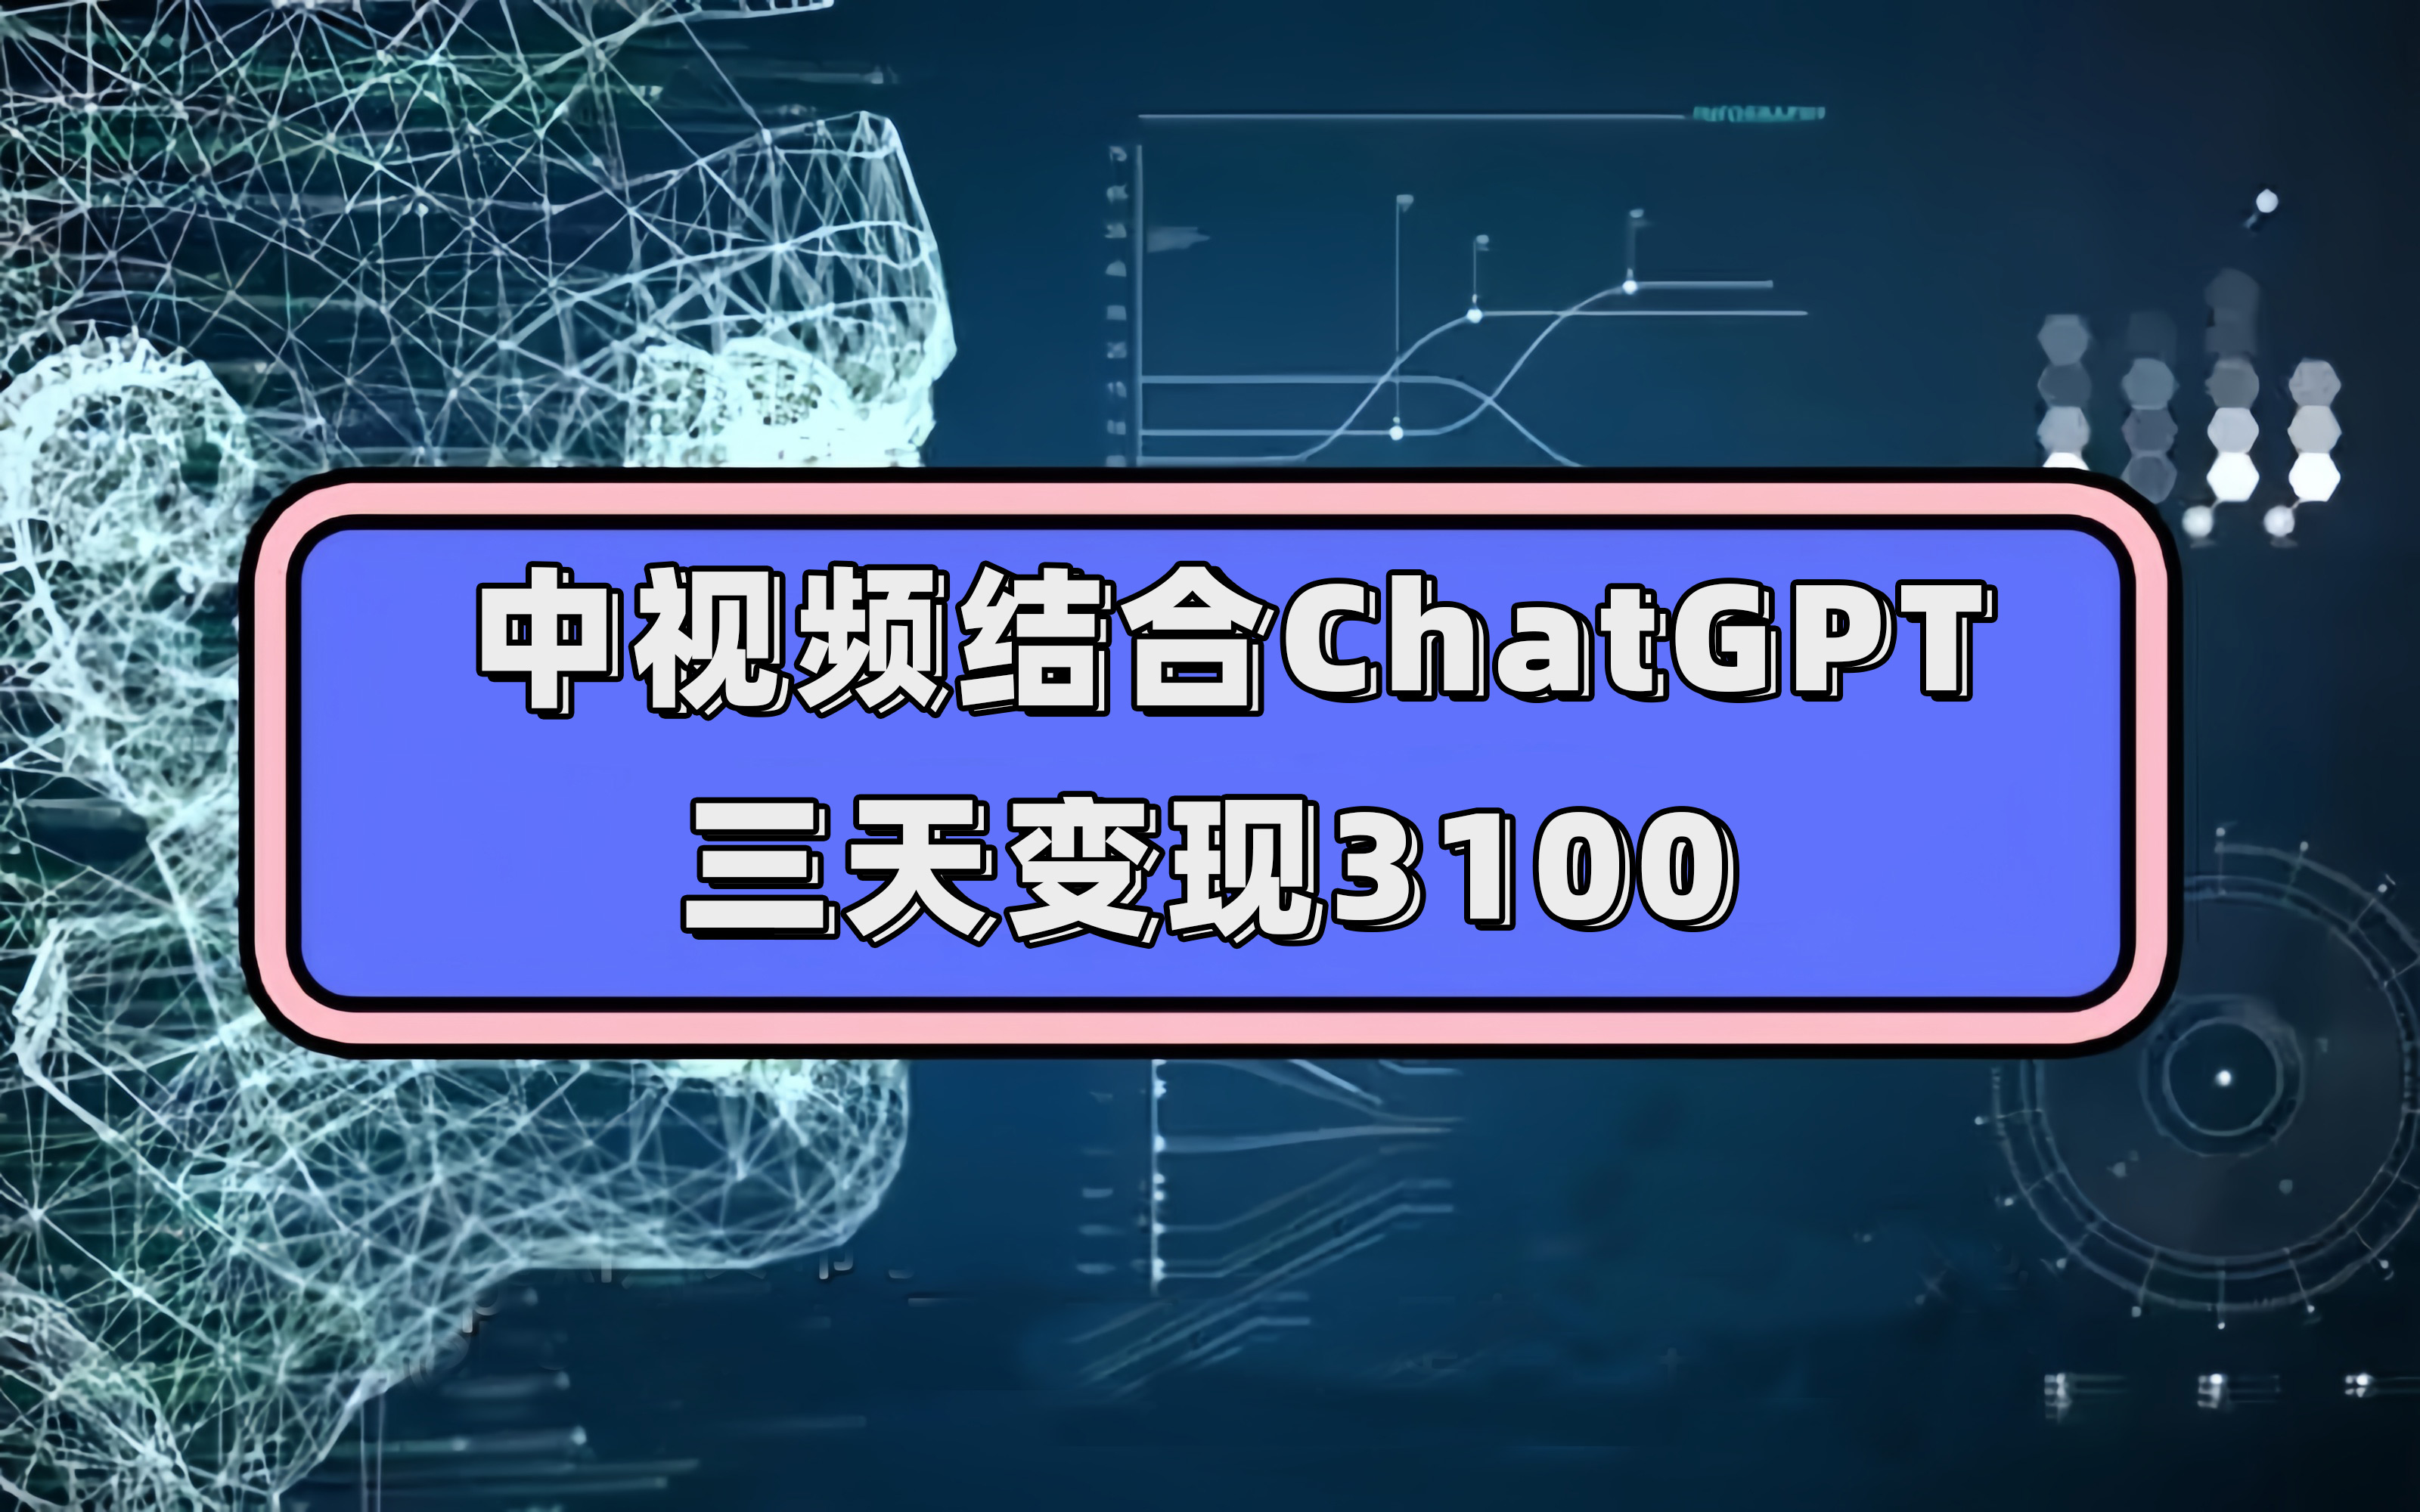 （7421期）中视频结合ChatGPT，三天变现3100，人人可做 玩法思路实操教学！-皓哥创业笔记